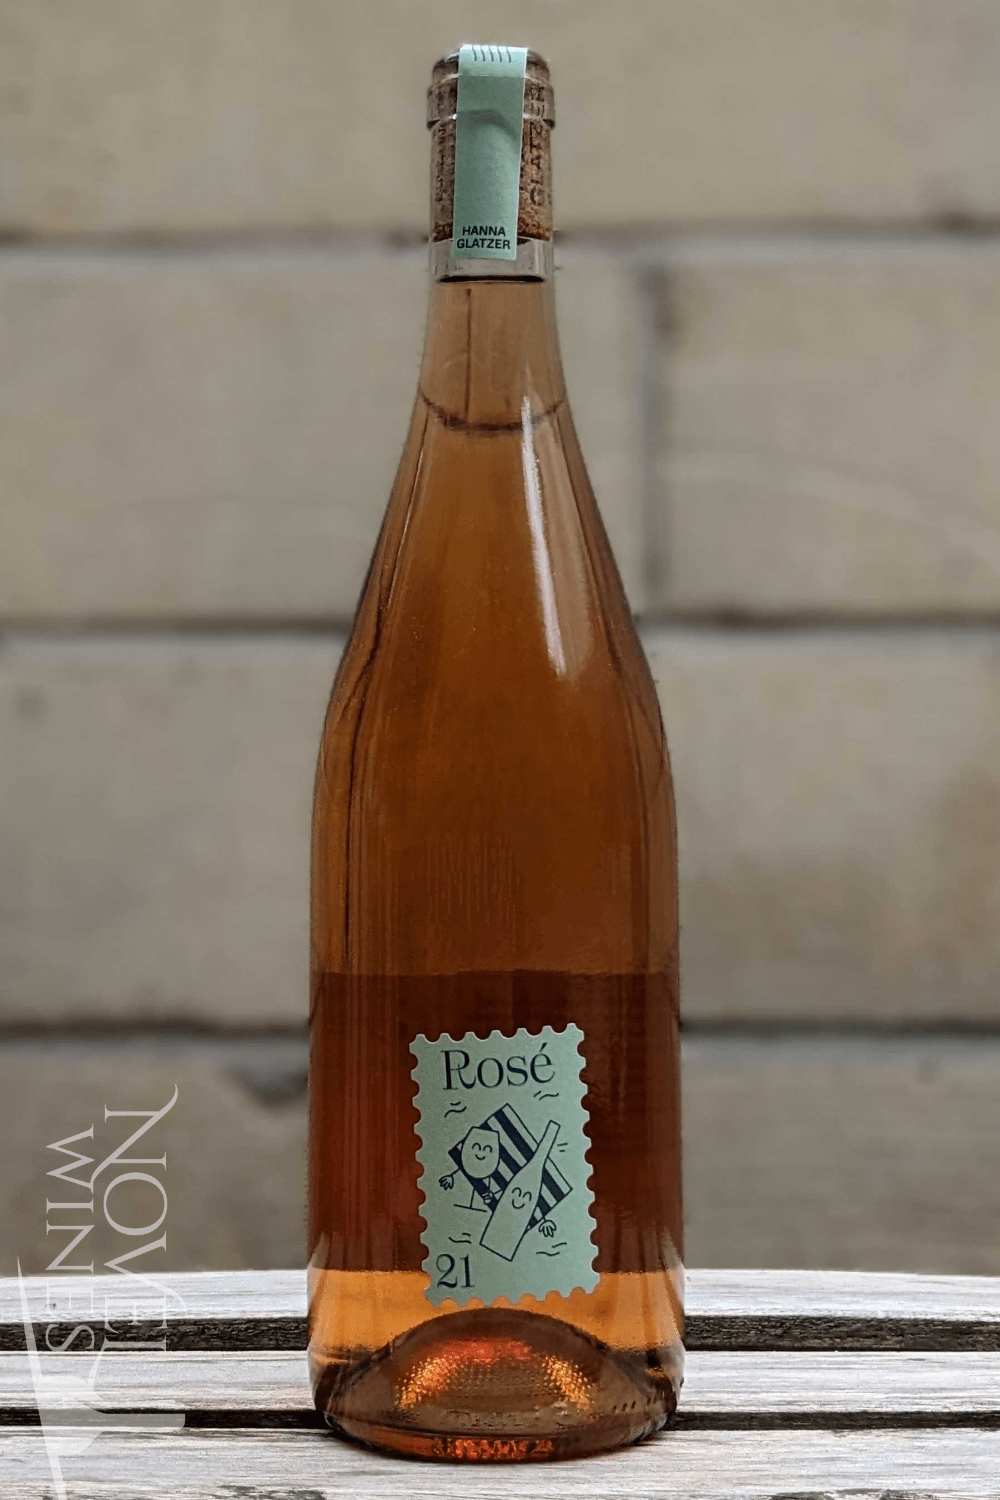 Glatzer Red Wine Hanna Glatzer's Organic Rosé 2021, Austria